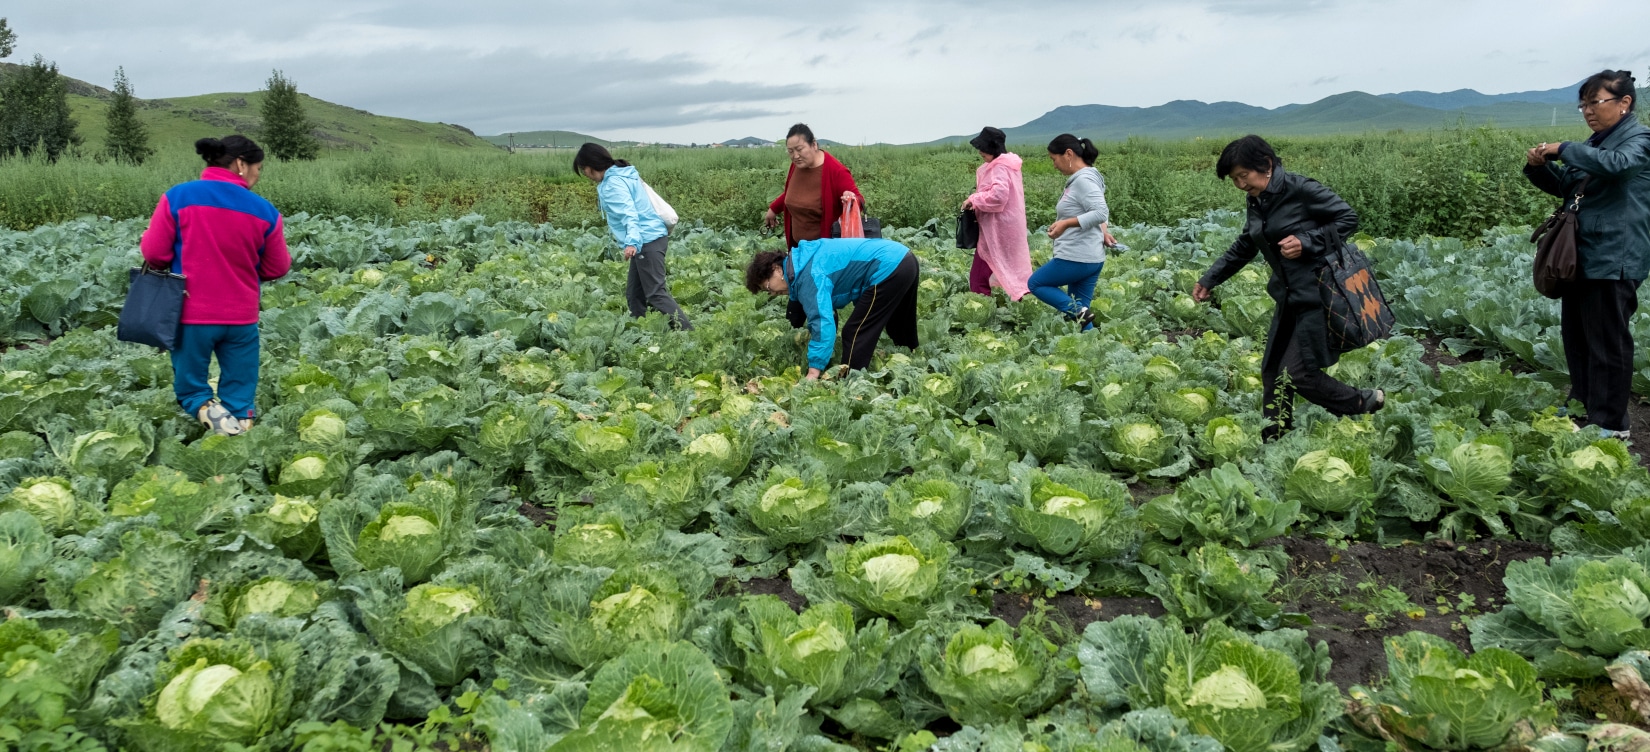 Le maraîchage durable et la sécurité alimentaire, une priorité en zones rurales mongoles